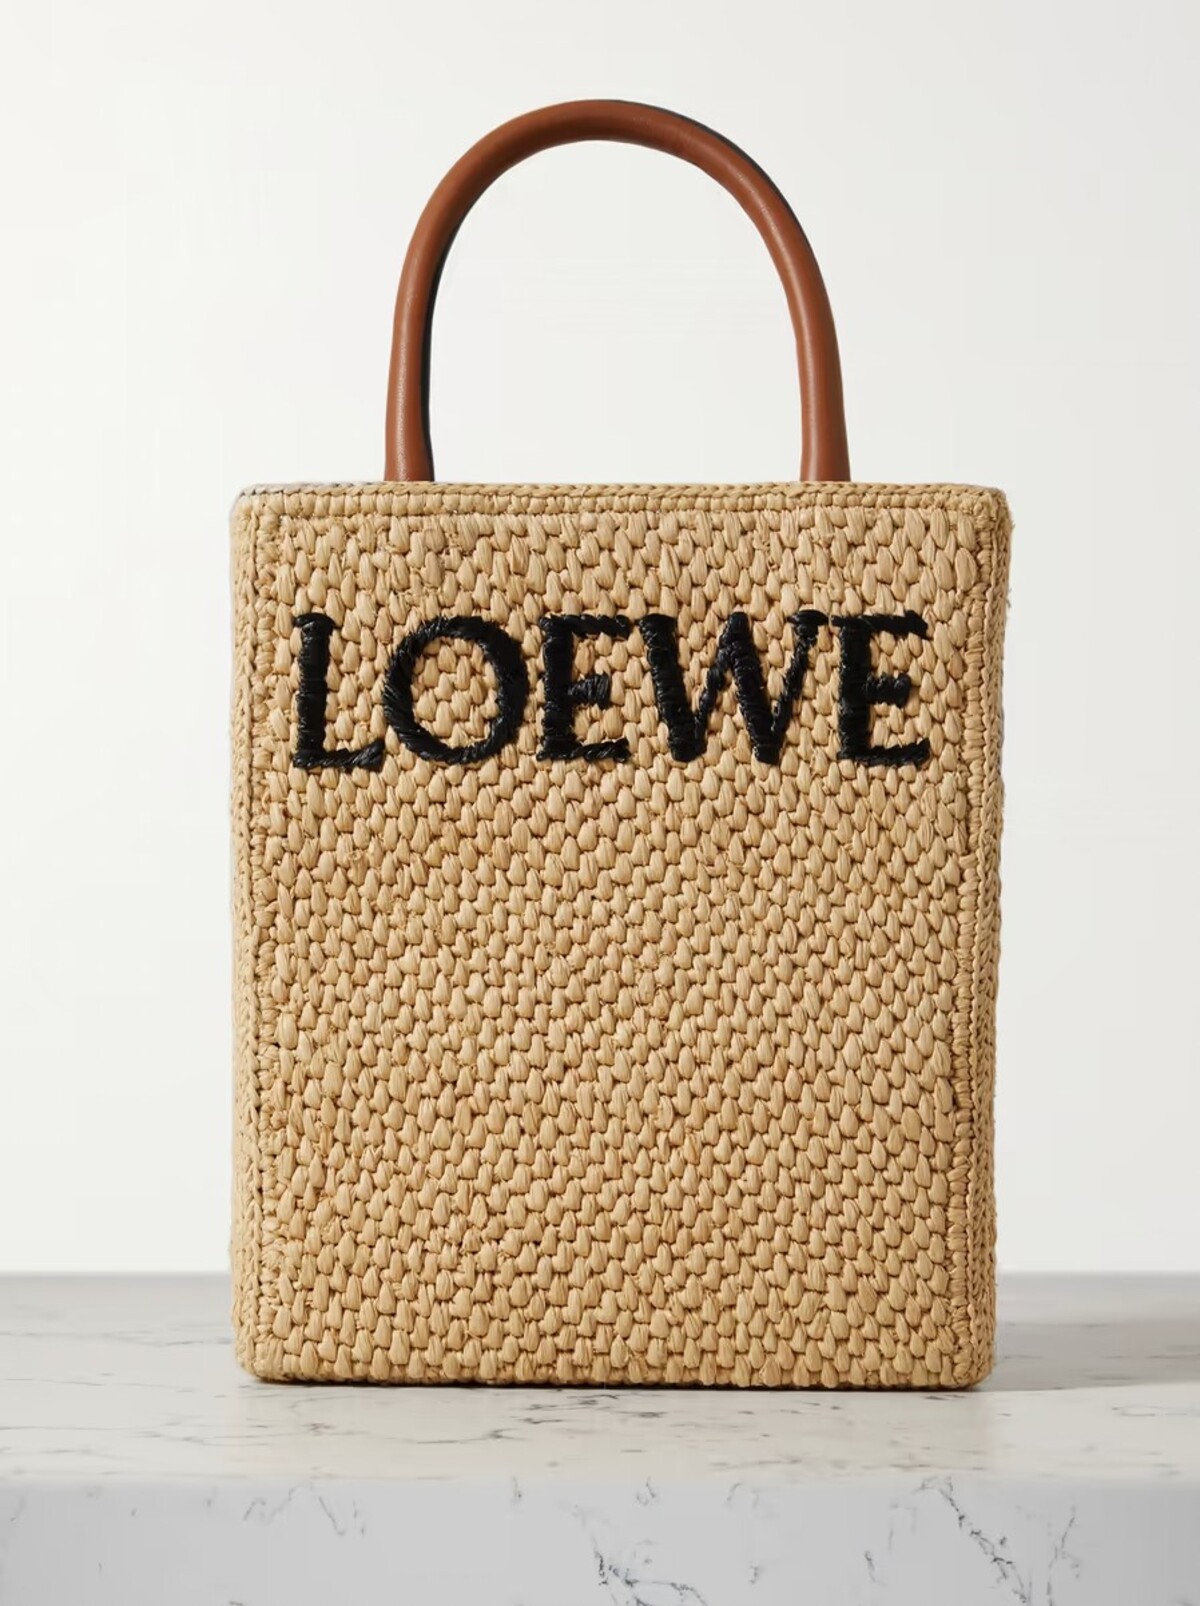 Model na fotke, ktorý ocenia najmä milovníčky extravagancie, ti Loewe ponúka za 950 eur.